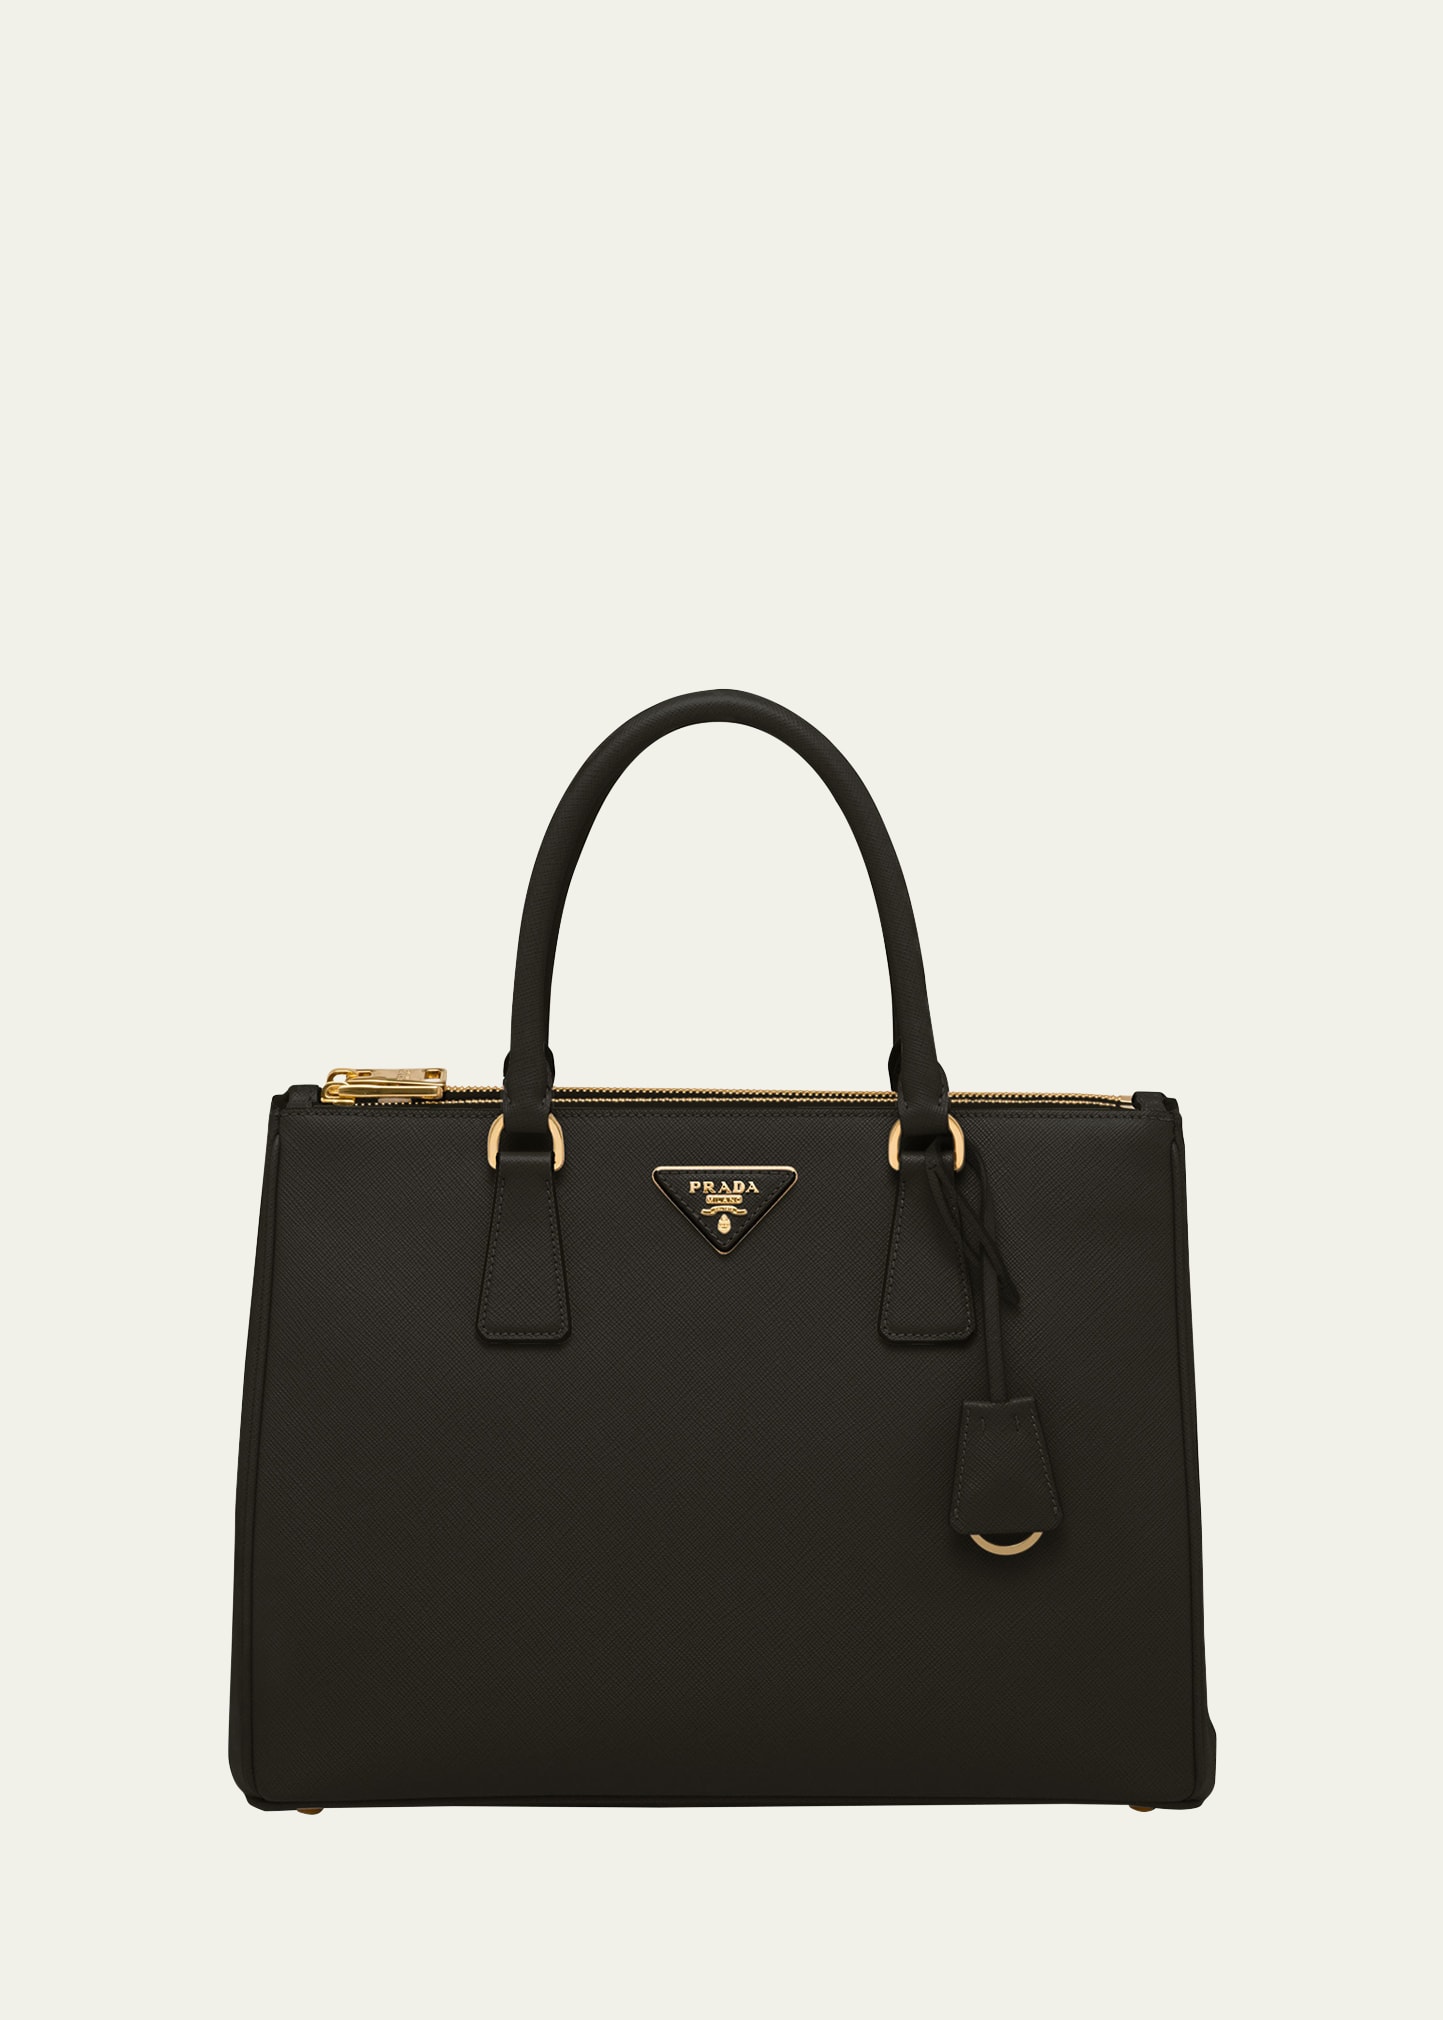 Prada Galleria Large Leather Top-handle Bag In F0002 Nero